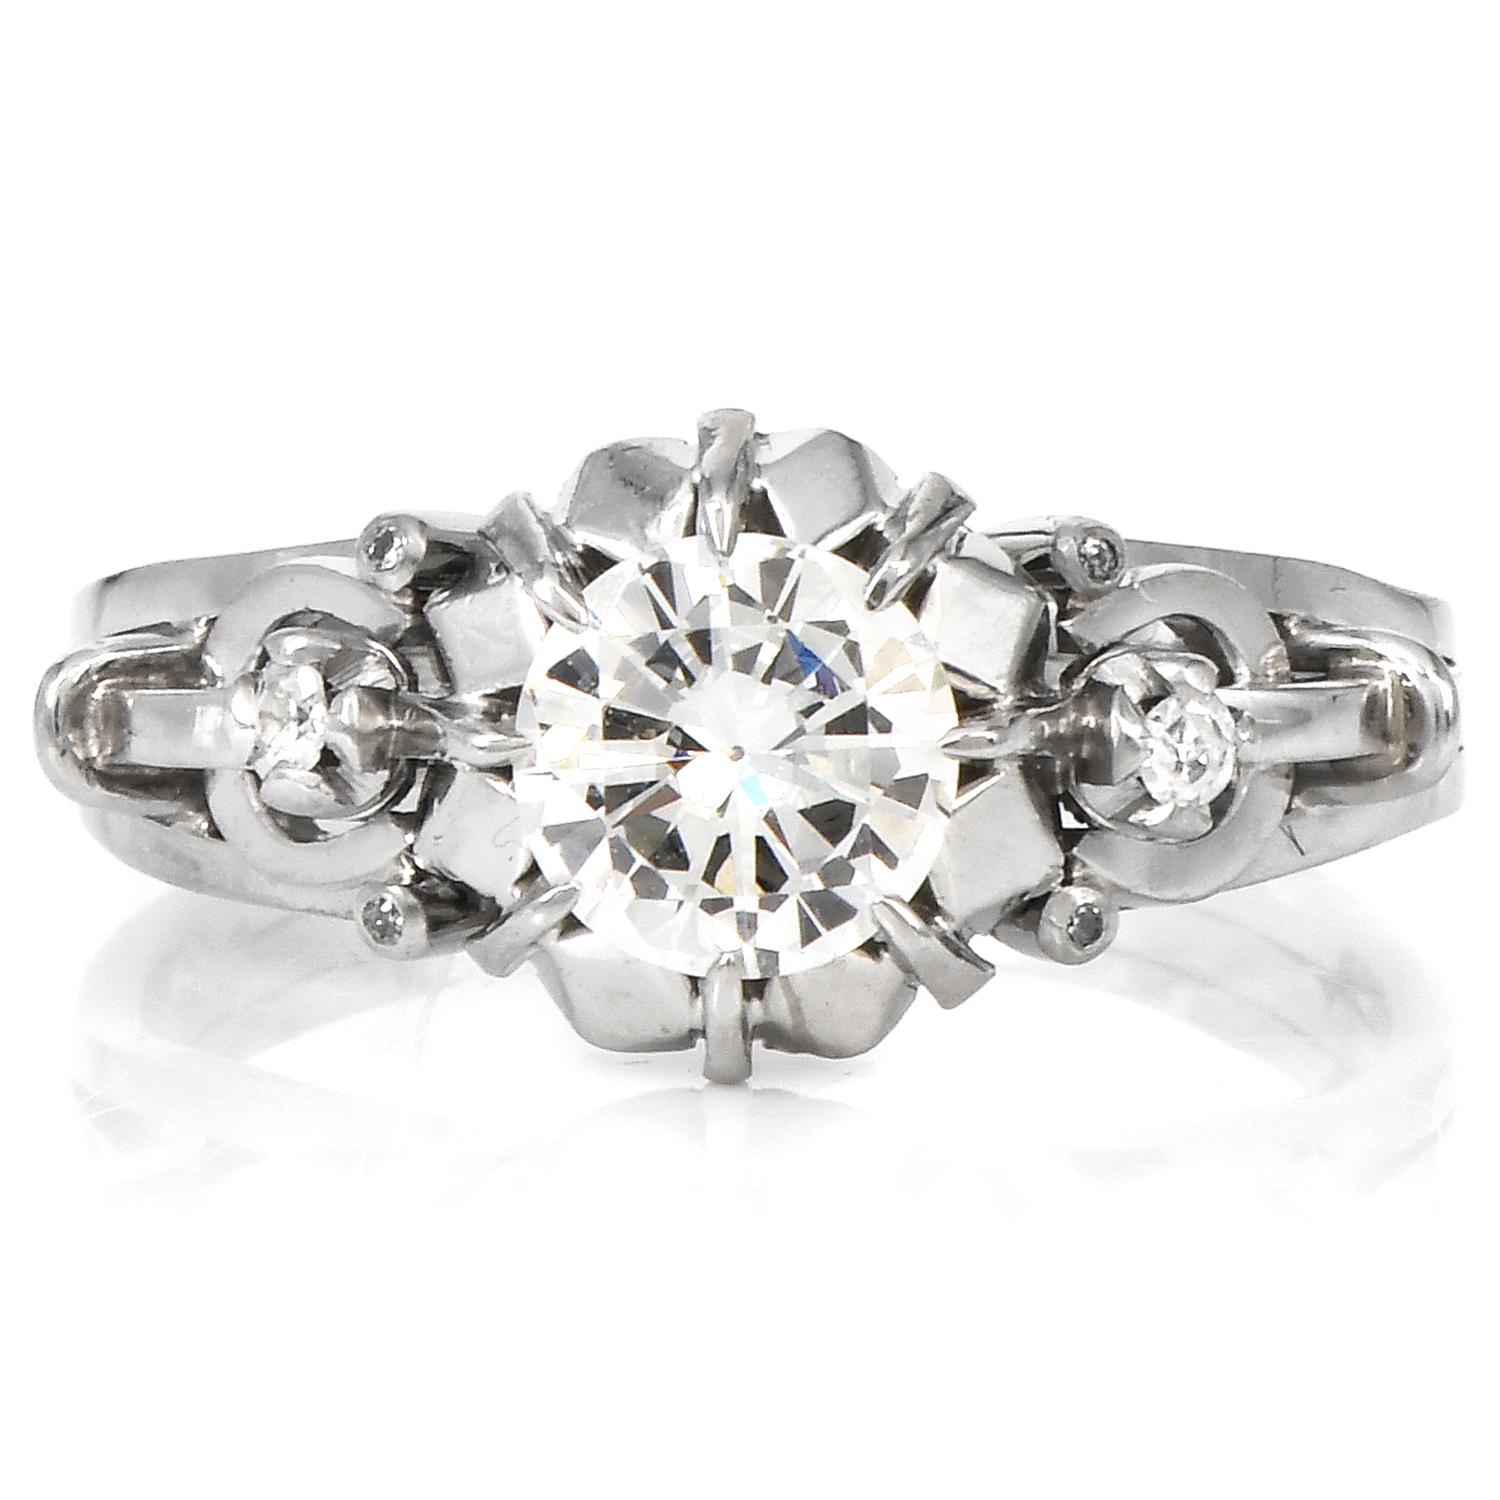 Vintage Retro Diamant Filigran Platin Verlobungsring.

Dieser kunstvoll geschnitzte, durchbrochene Diamant-Verlobungsring aus den 1950er-Jahren wurde inspiriert von 

Ein aus Platin gefertigtes Blumenmotiv.

In der Mitte befindet sich ein Diamant